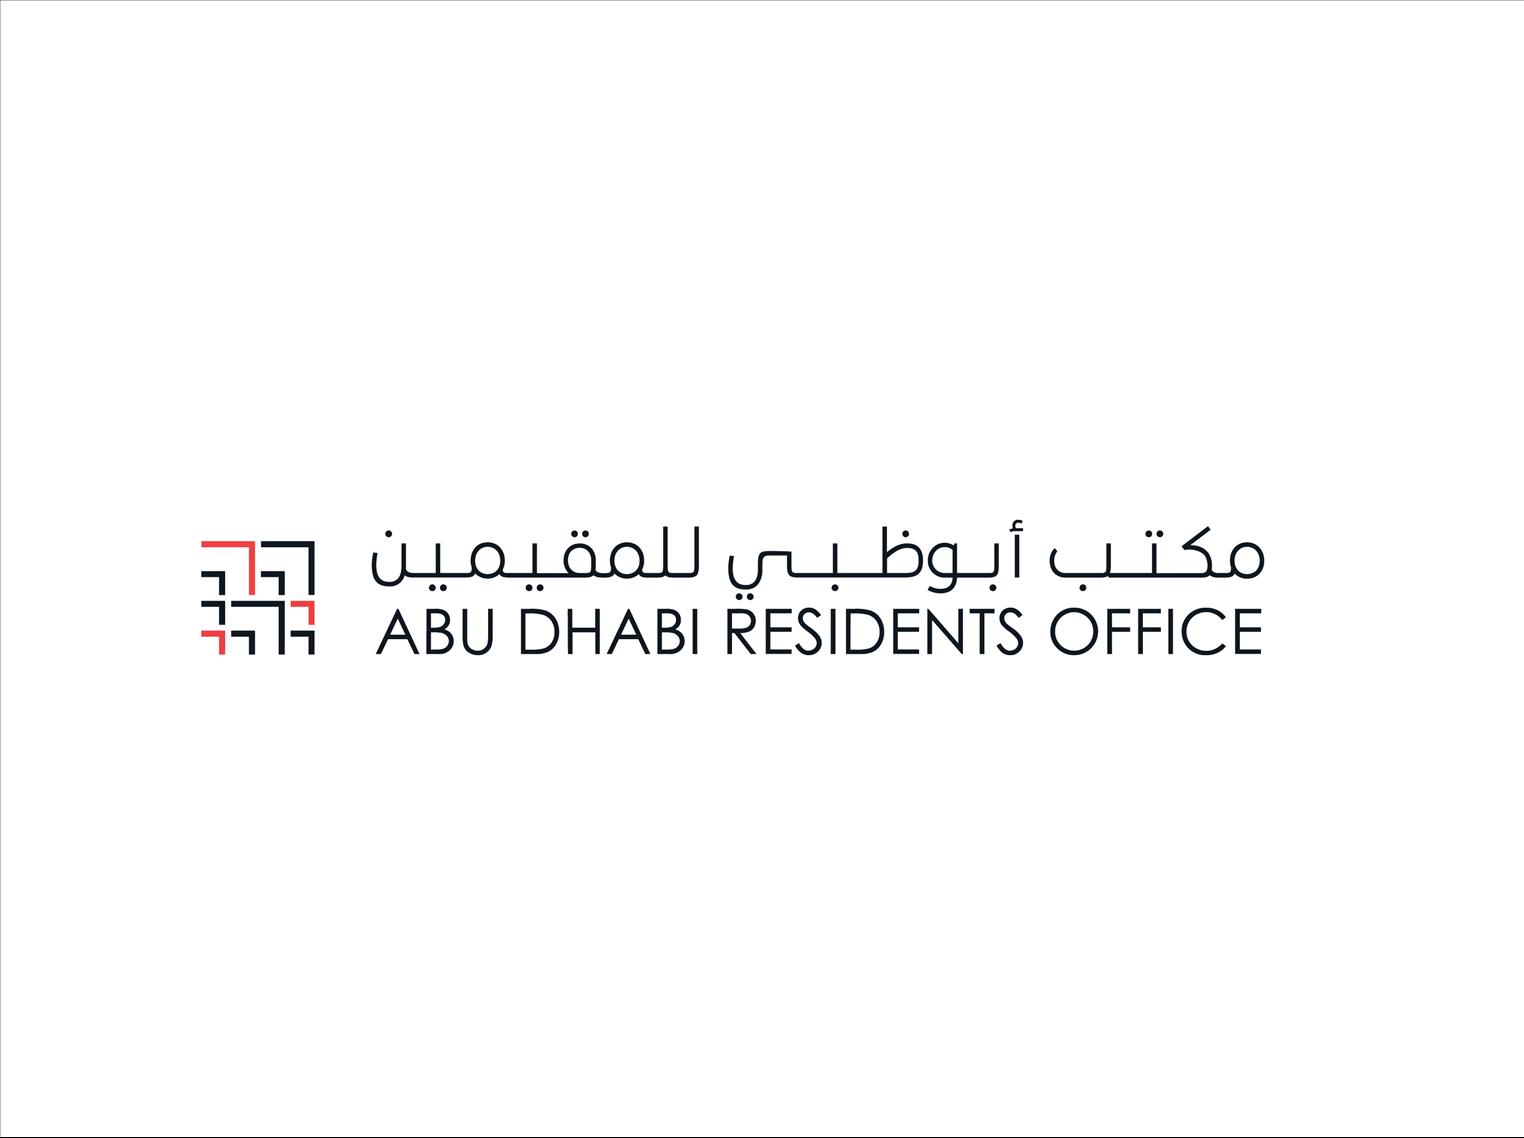 الإمارات - 'مكتب أبوظبي للمقيمين' يتعاون مع شركائه الاستراتيجيين لتقديم مزايا لحاملي الإقامة الذهبية' 